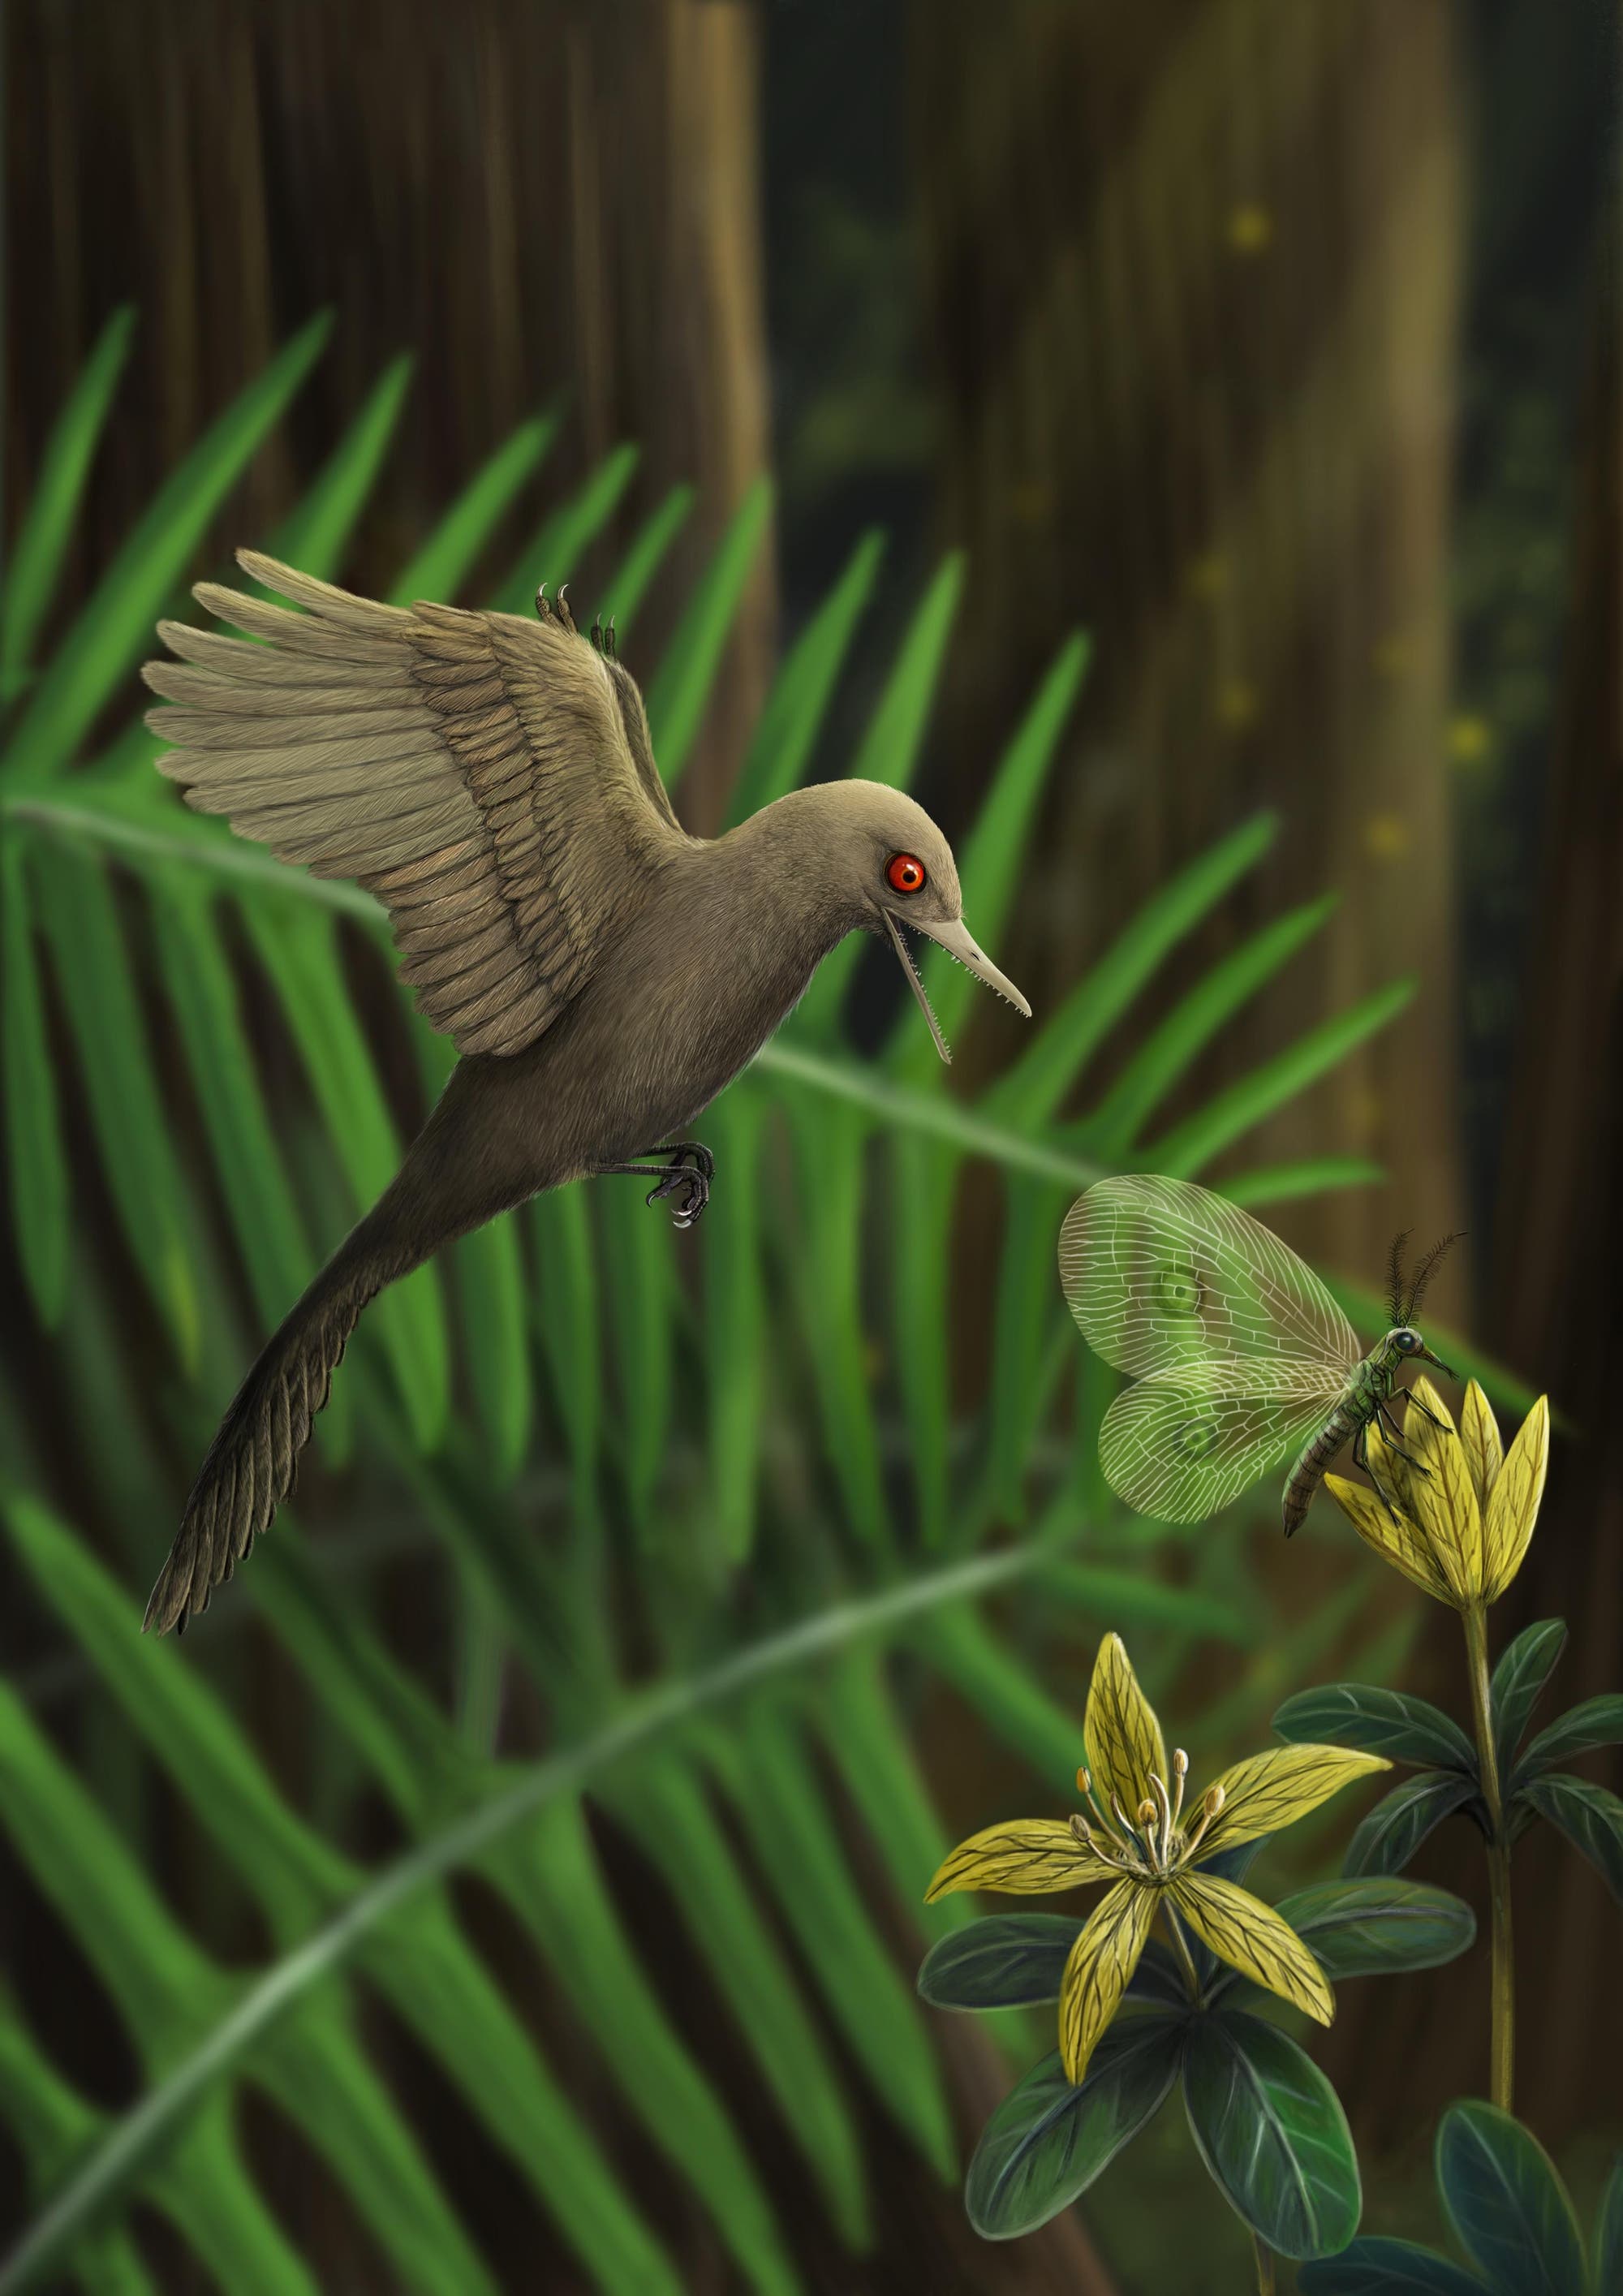 Die künstlerische Darstellung zeigt den neu entdeckten Minidinosaurier auf der Jagd nach einem Insekt.